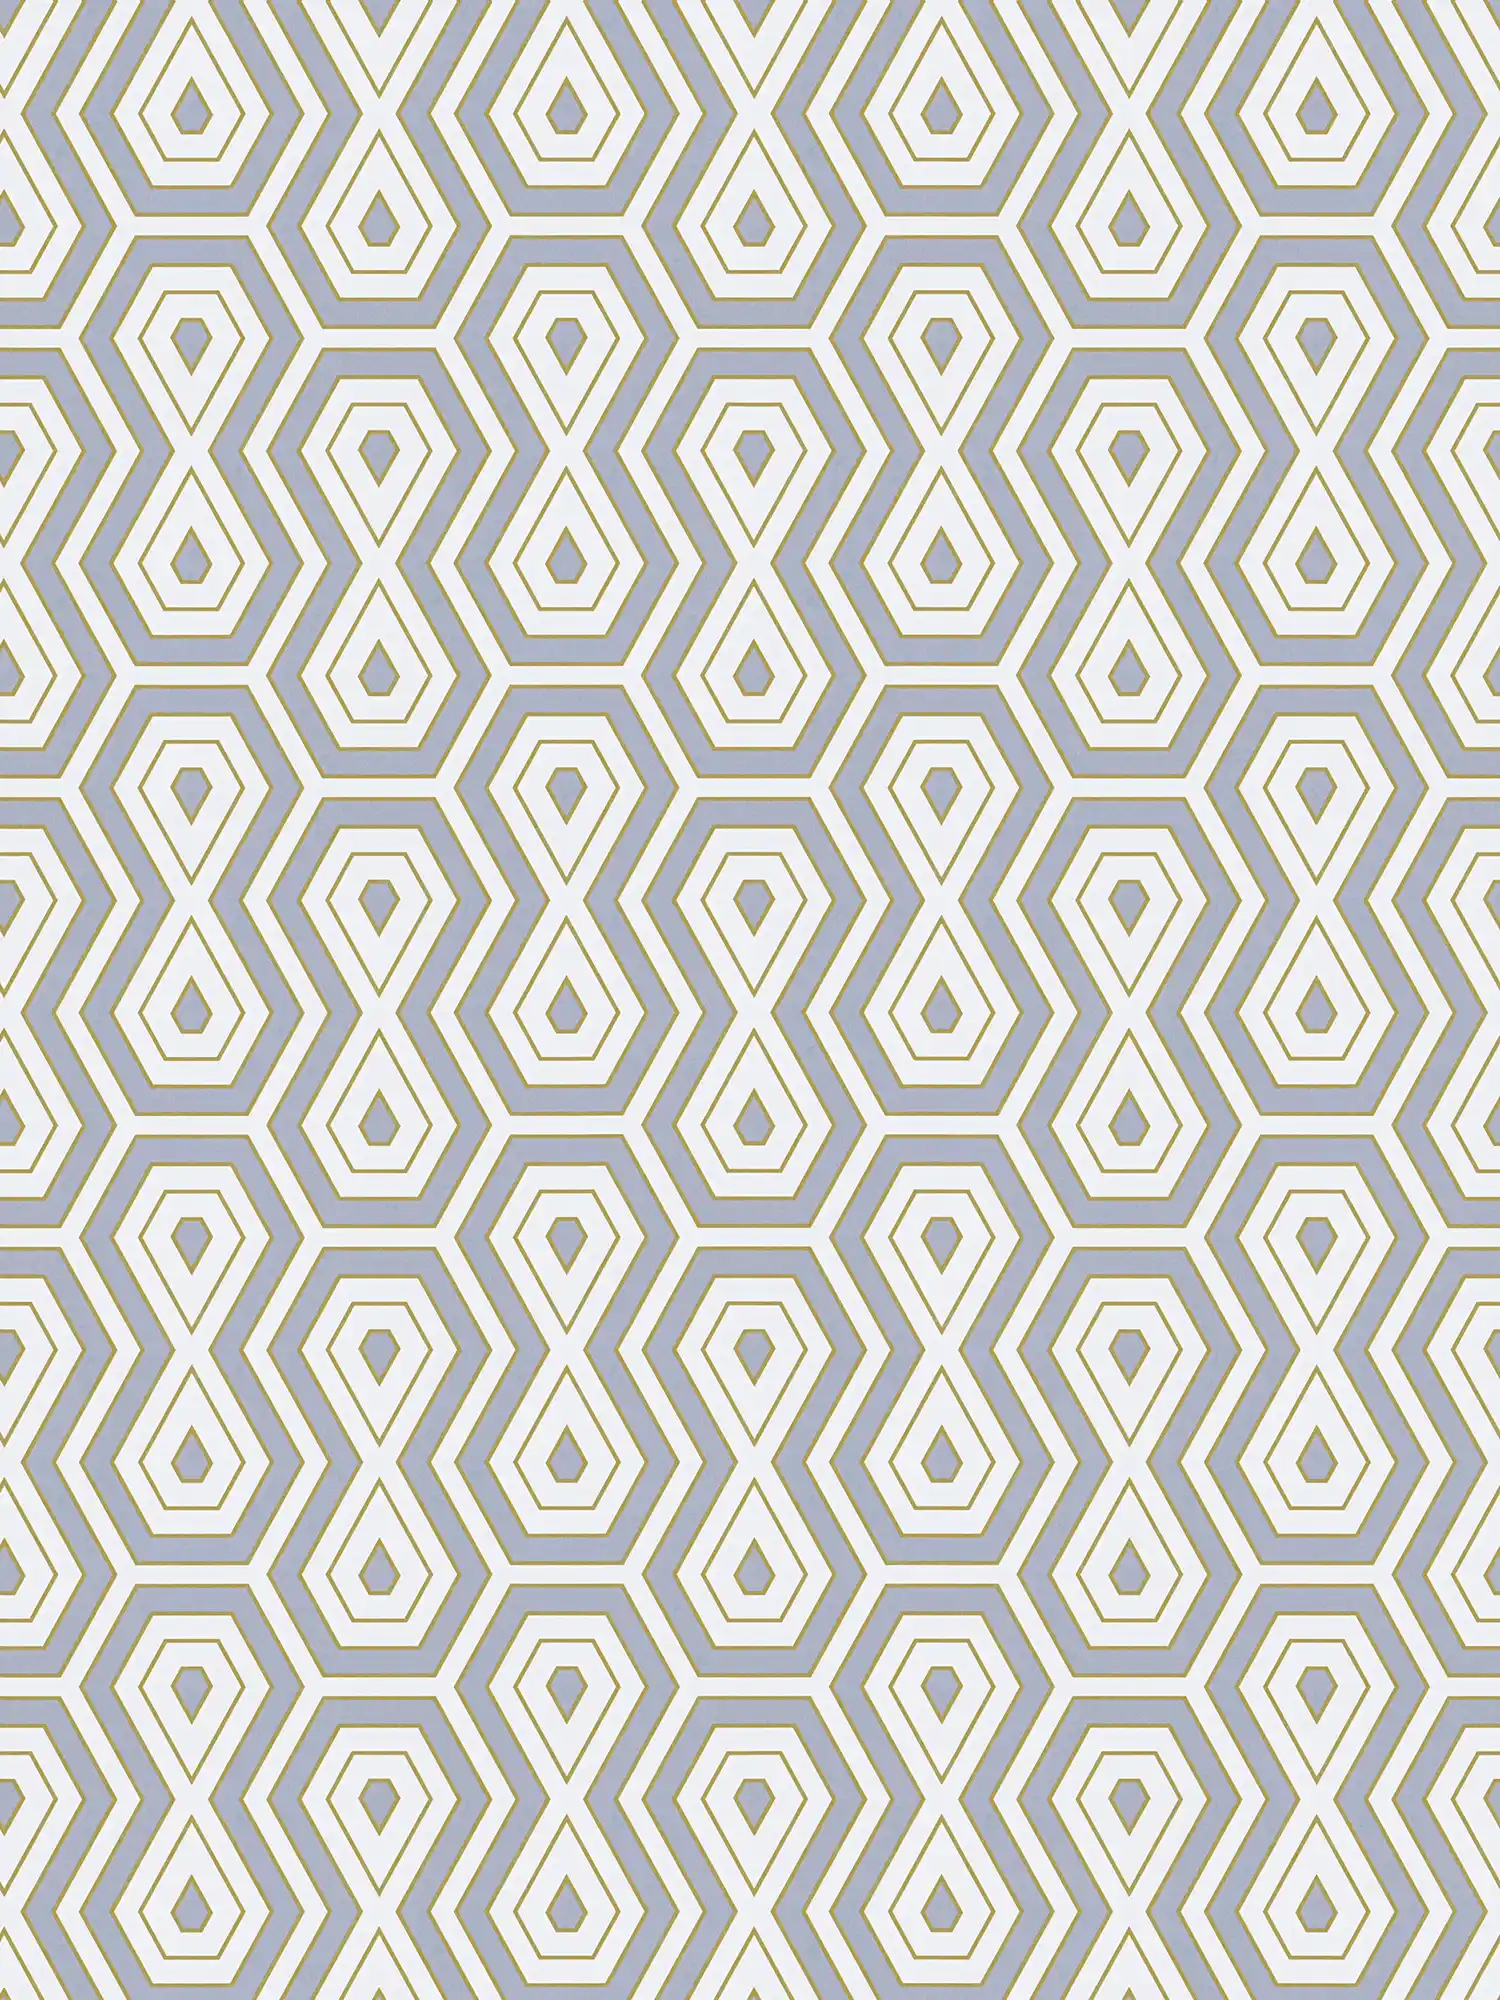             Papier peint intissé gris or motif rétro géométrique
        